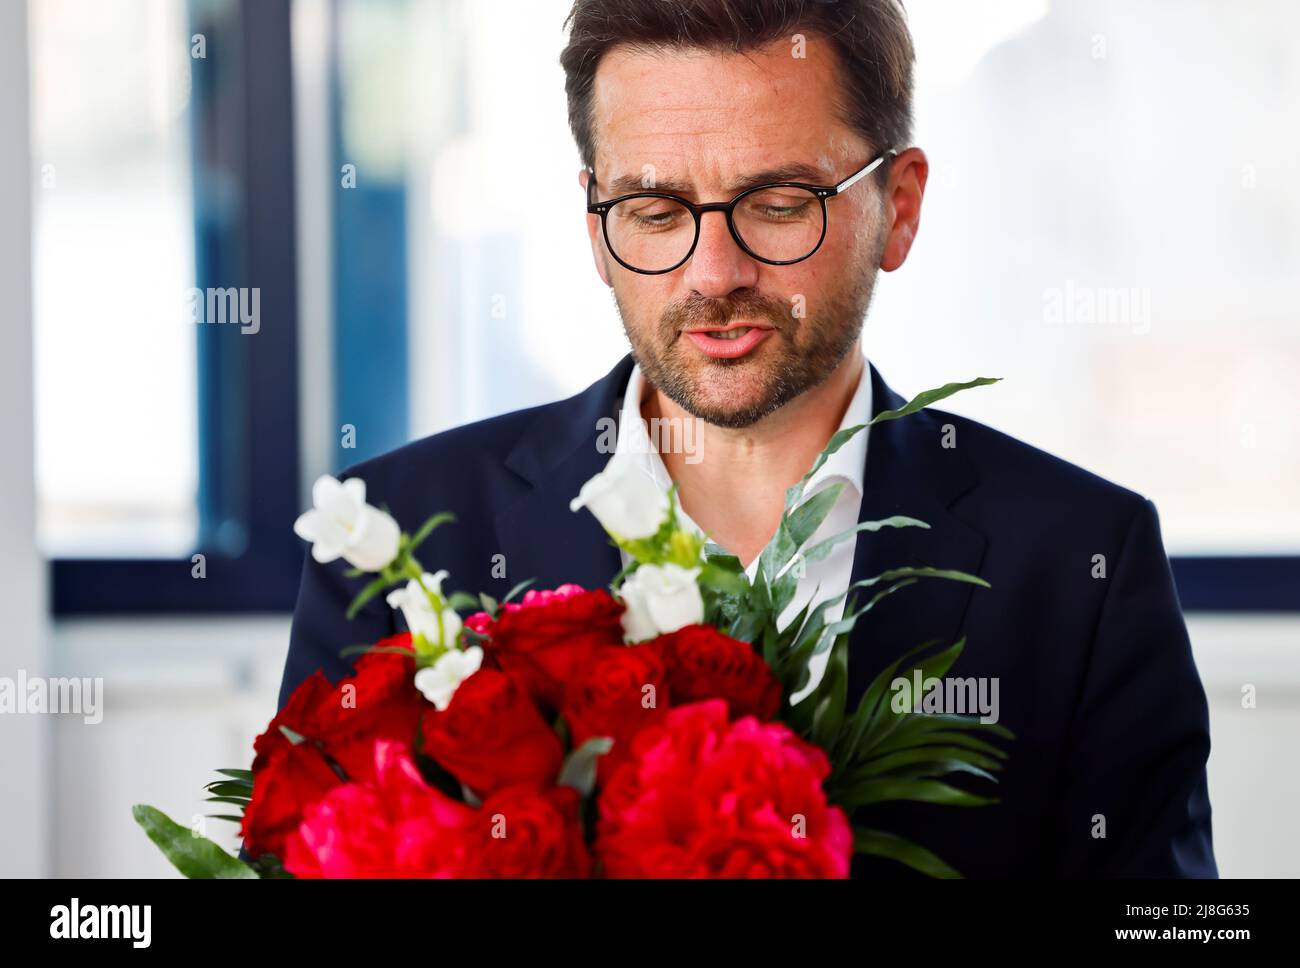 Thomas Kutschaty, Spitzenkandidat der SPD für die Landtagswahl in Nordrhein-Westfalen (NRW), erhält Blumen bei einem Treffen am 16. Mai 2022 in der Parteizentrale in Berlin. REUTERS/Hannibal Hanschke Stockfoto